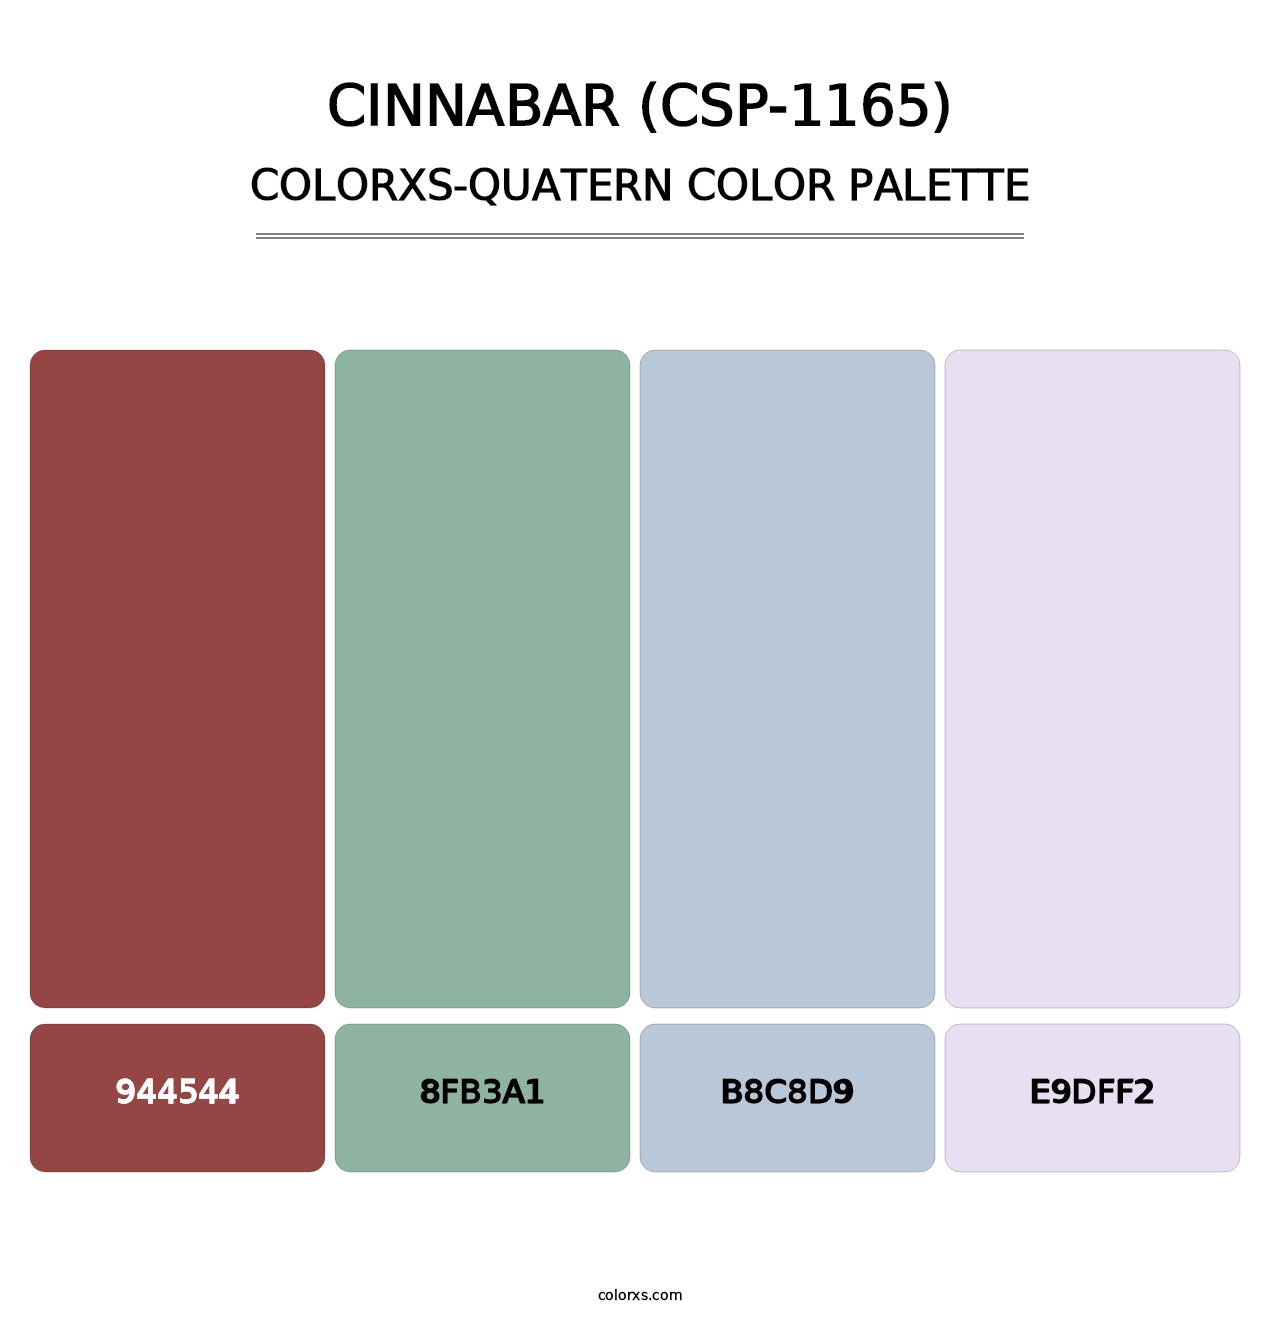 Cinnabar (CSP-1165) - Colorxs Quatern Palette